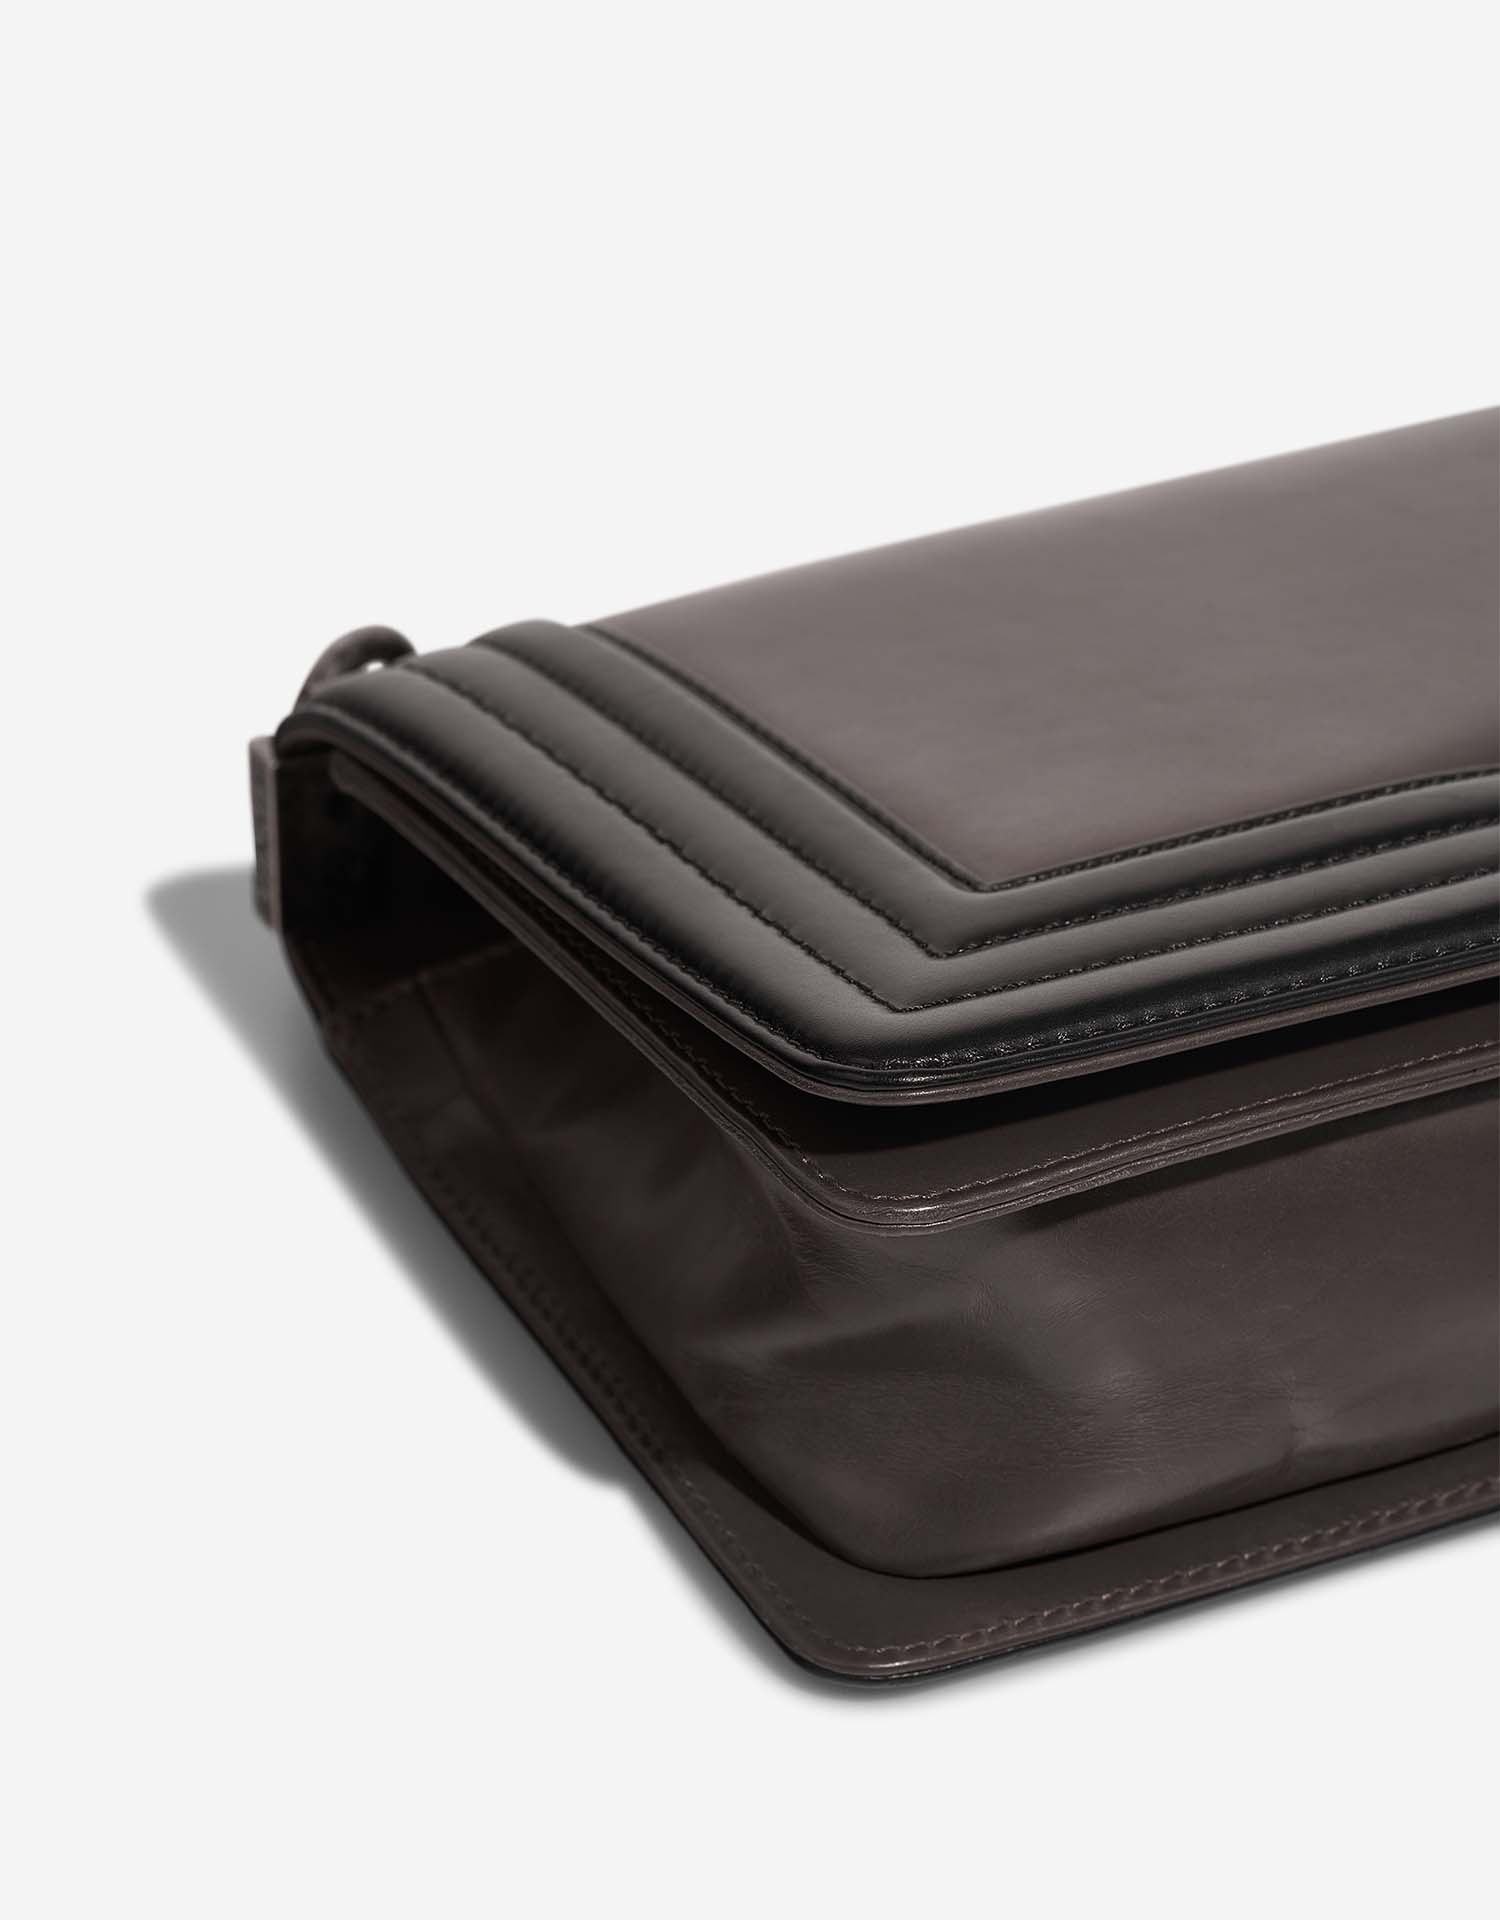 Chanel Boy OldMedium Black-Grey signs of wear| Sell your designer bag on Saclab.com